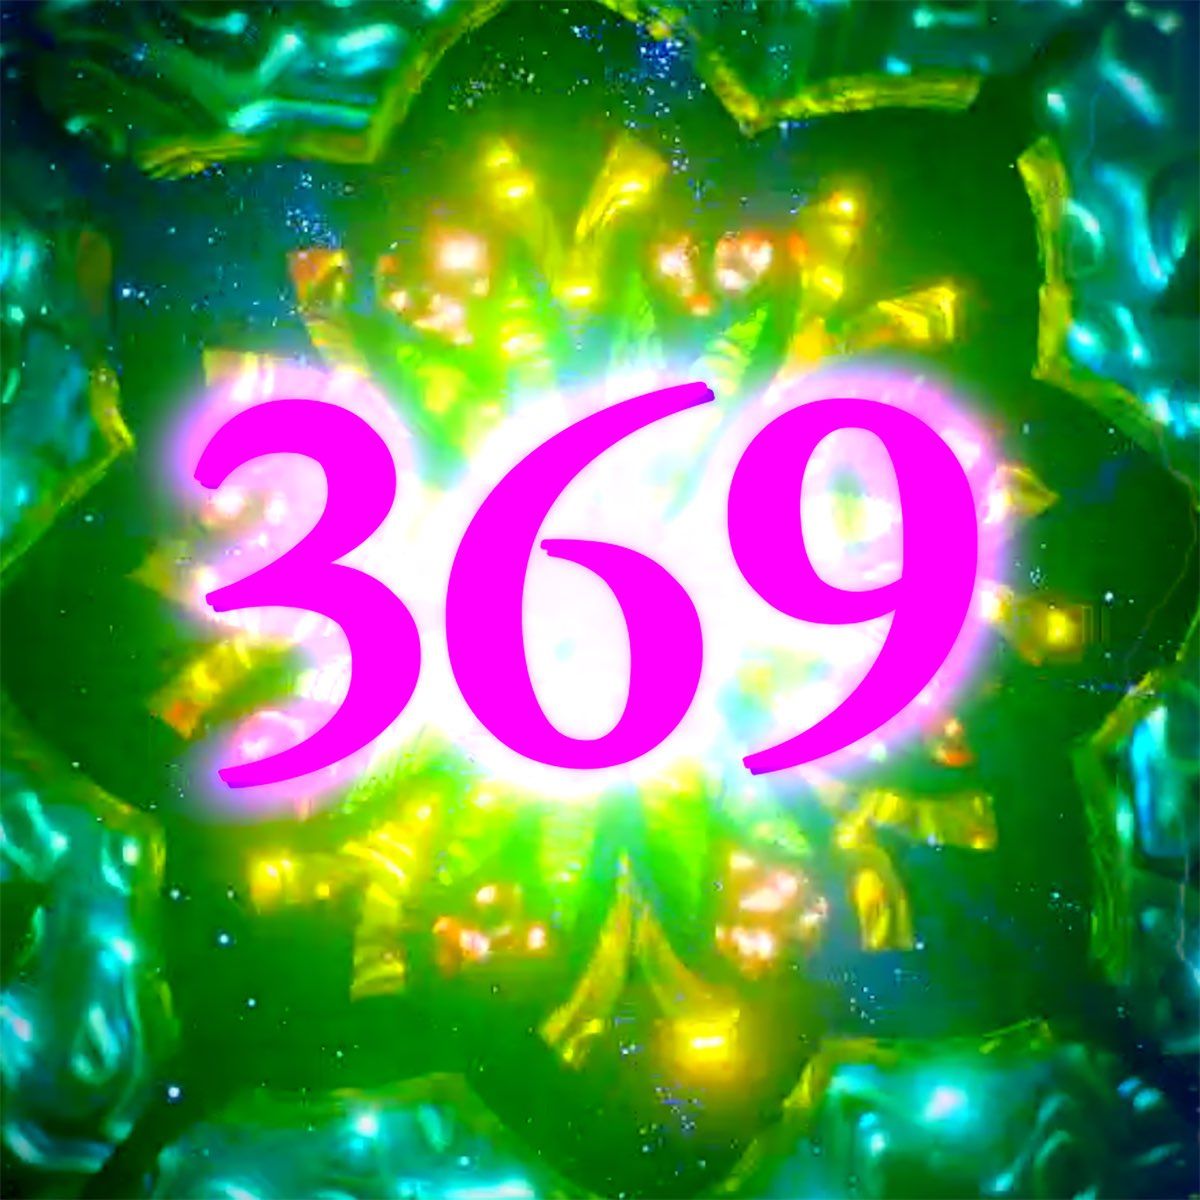  369 Hz Nikola Tesla Frequency  Key to the Universe  Spiritual  Ascension  YouTube